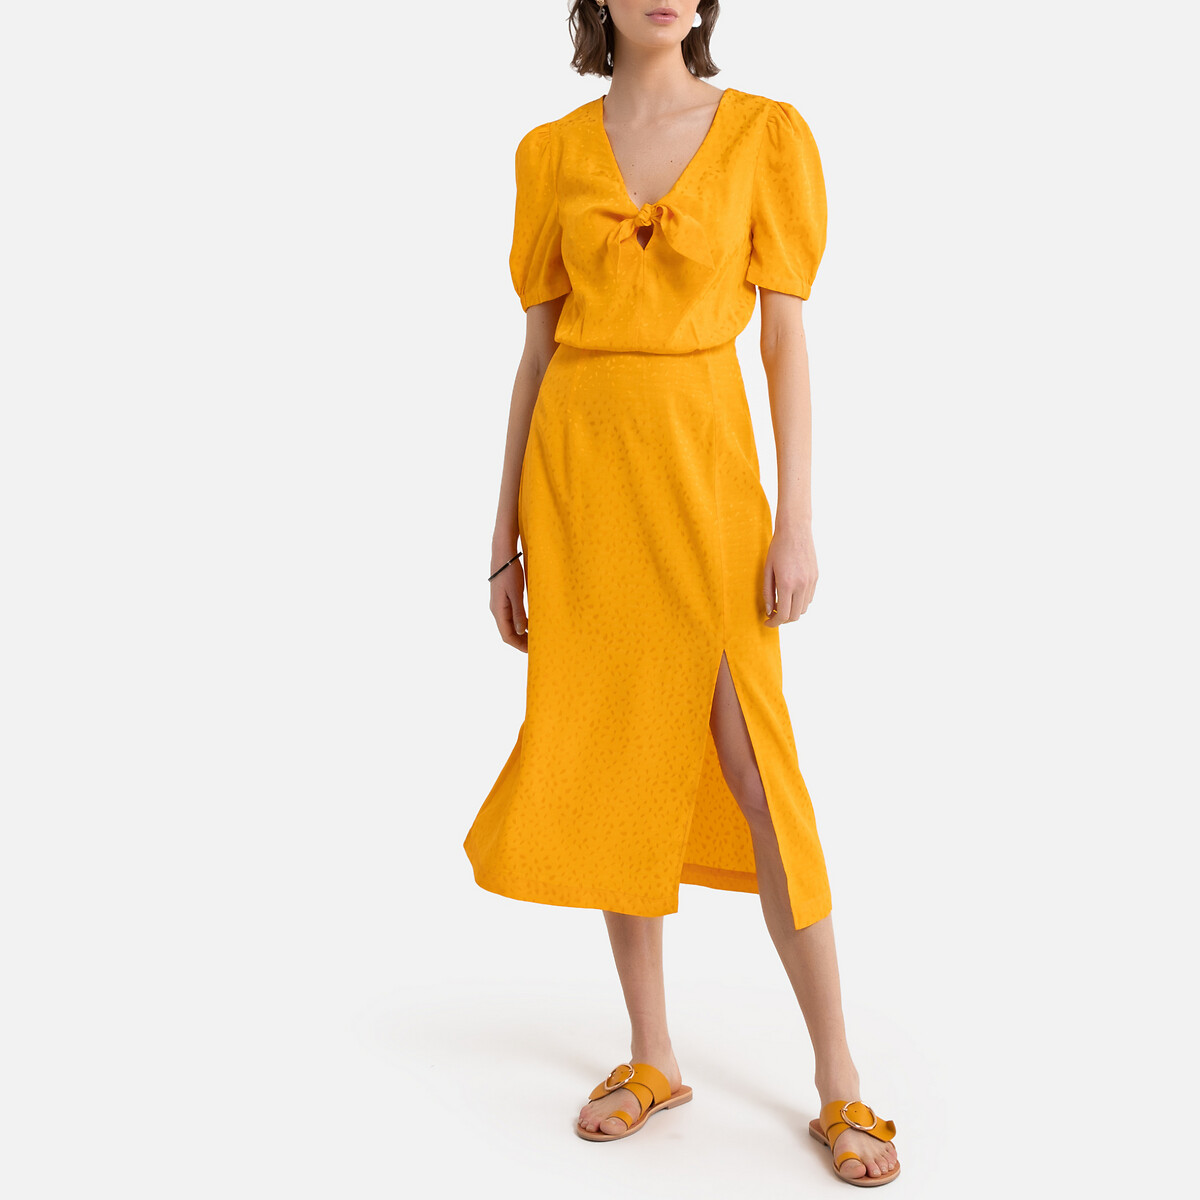 Платье La Redoute Длинное для торжества из сатиновой жаккардовой ткани 40 (FR) - 46 (RUS) желтый, размер 40 (FR) - 46 (RUS) Длинное для торжества из сатиновой жаккардовой ткани 40 (FR) - 46 (RUS) желтый - фото 1